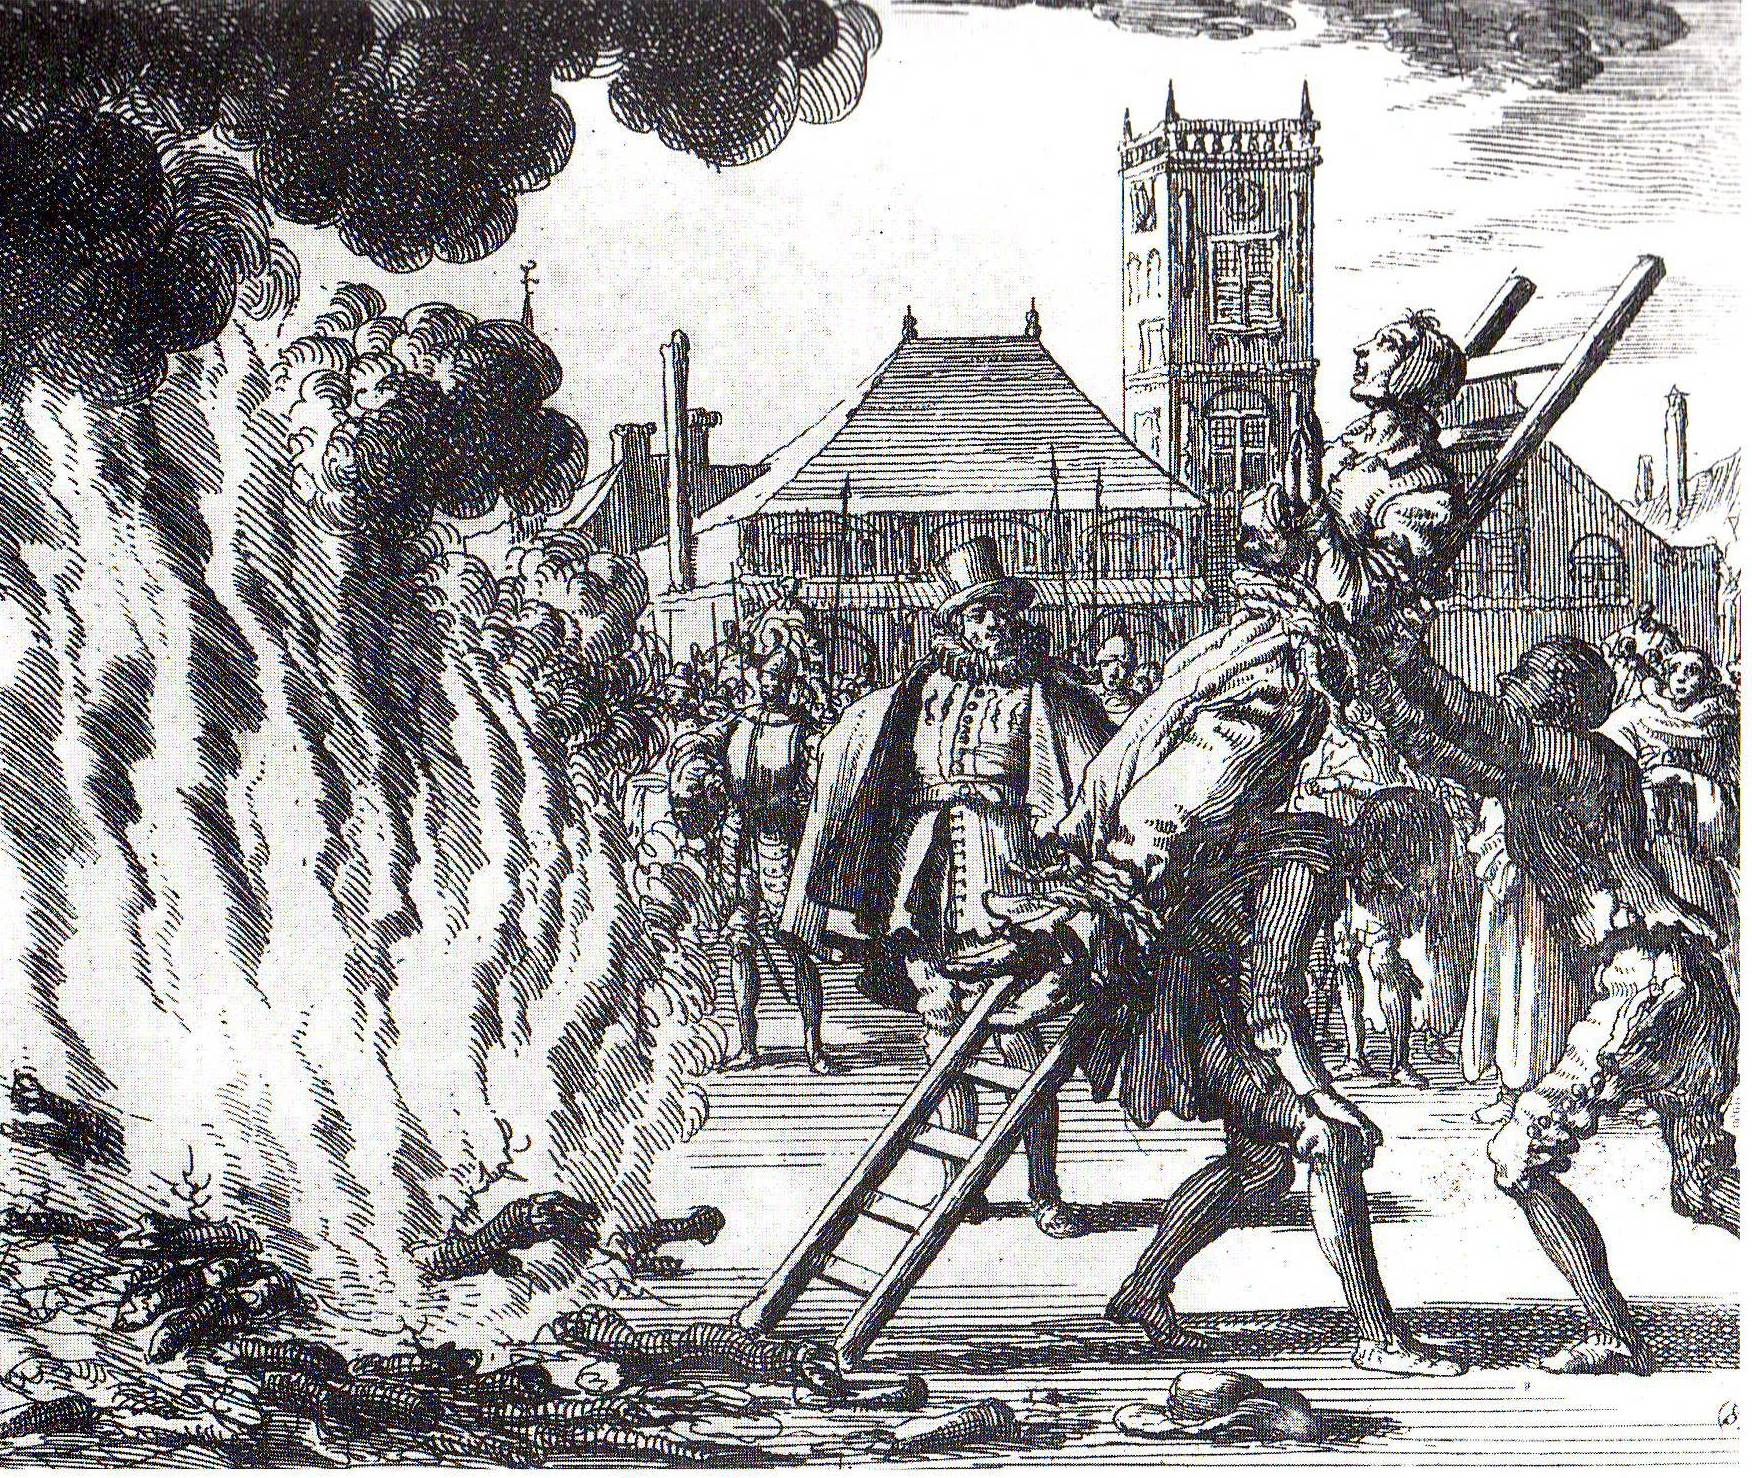 Una strega messa al rogo durante il periodo della Inquisizione